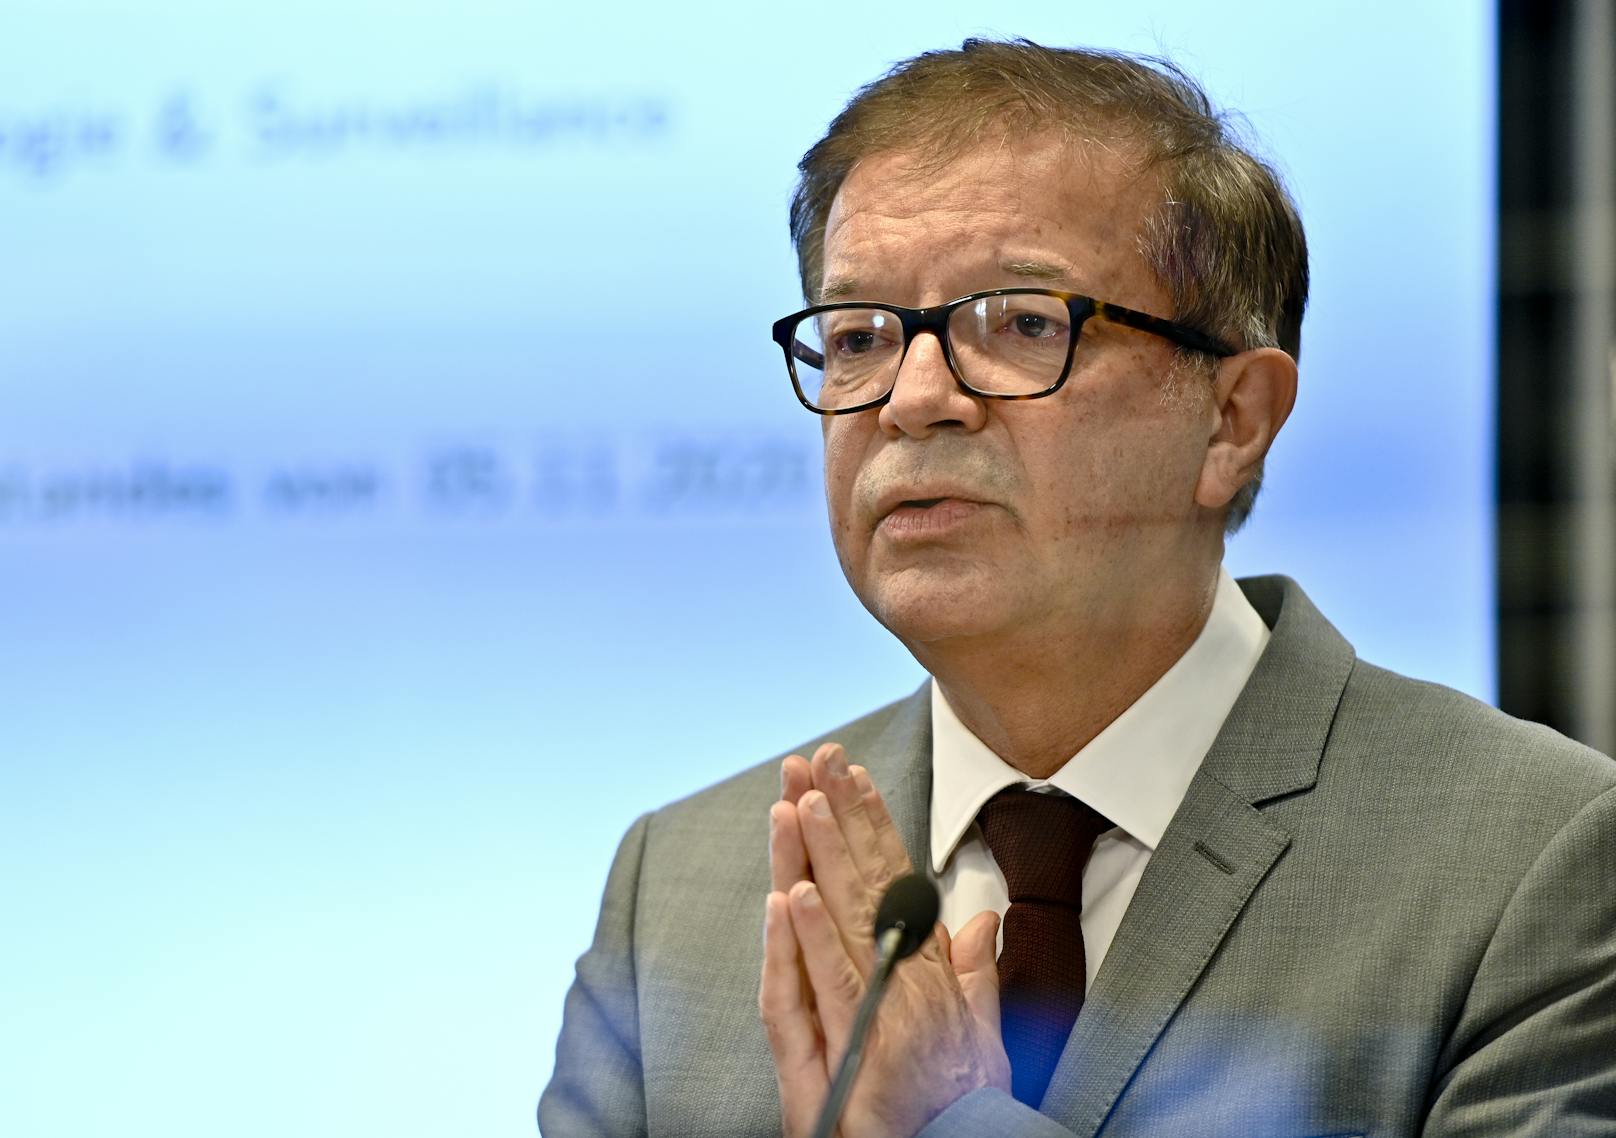 Gesundheitsminister Rudolf Anschober (Grüne) am 6. November 2020 im Rahmen der Pressekonferenz "Aktuelle Lage und erste Bilanz nach erneutem Lockdown in Österreich"